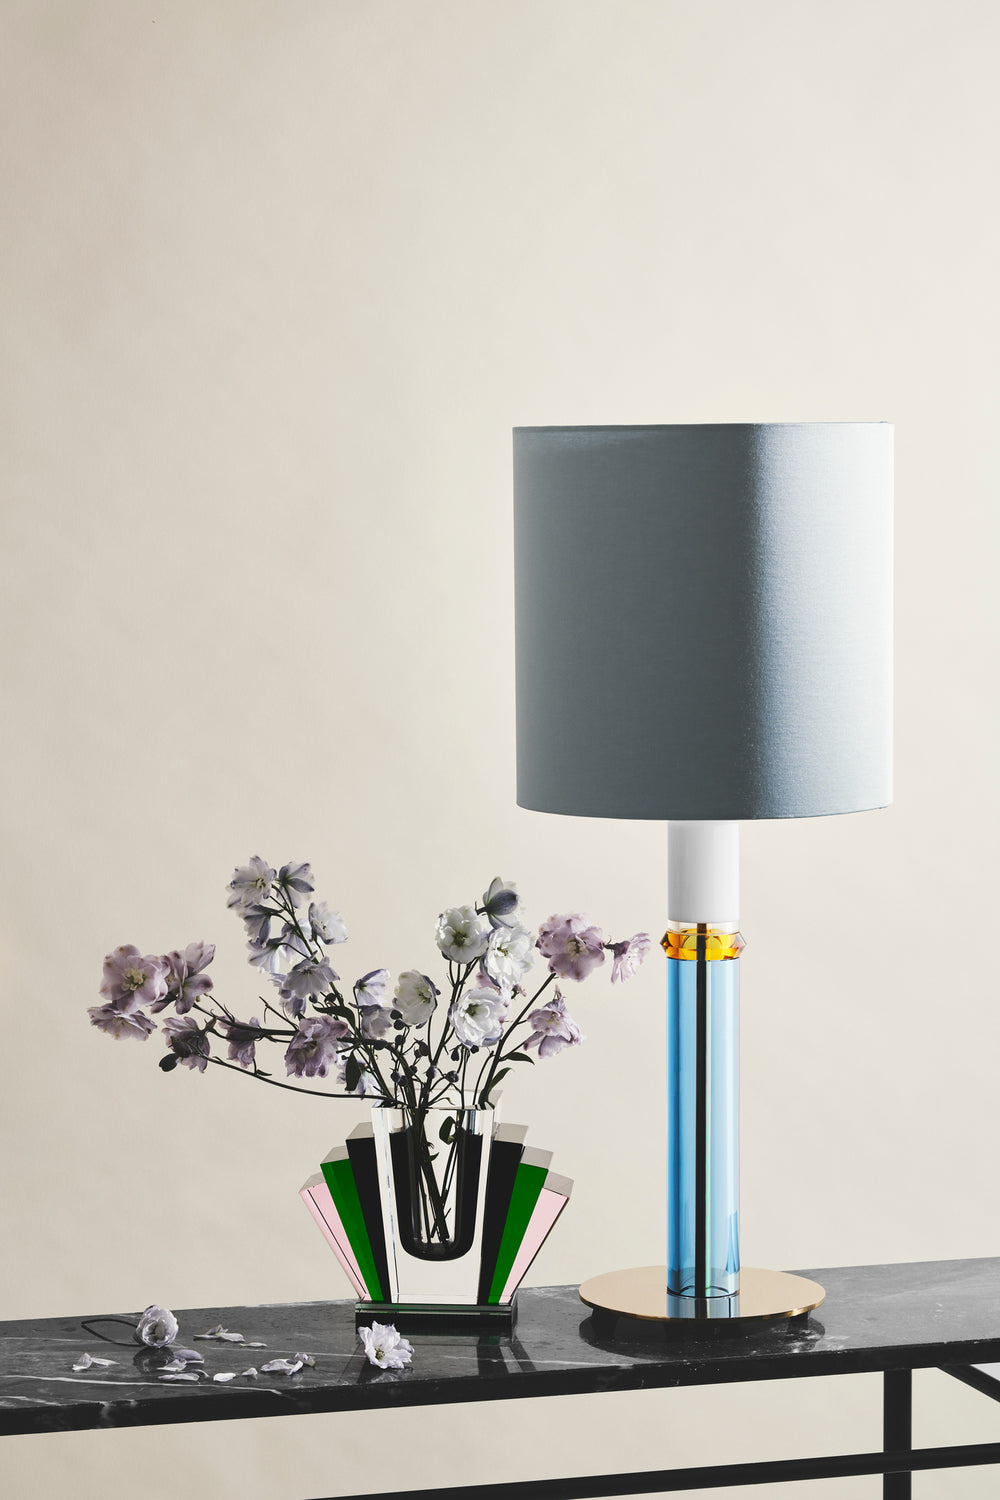 Opsætning af vase i klar, sort, grøn og lyserød krystal med blomster i samt bordlampe stående på marmorbord og hvid baggrund.